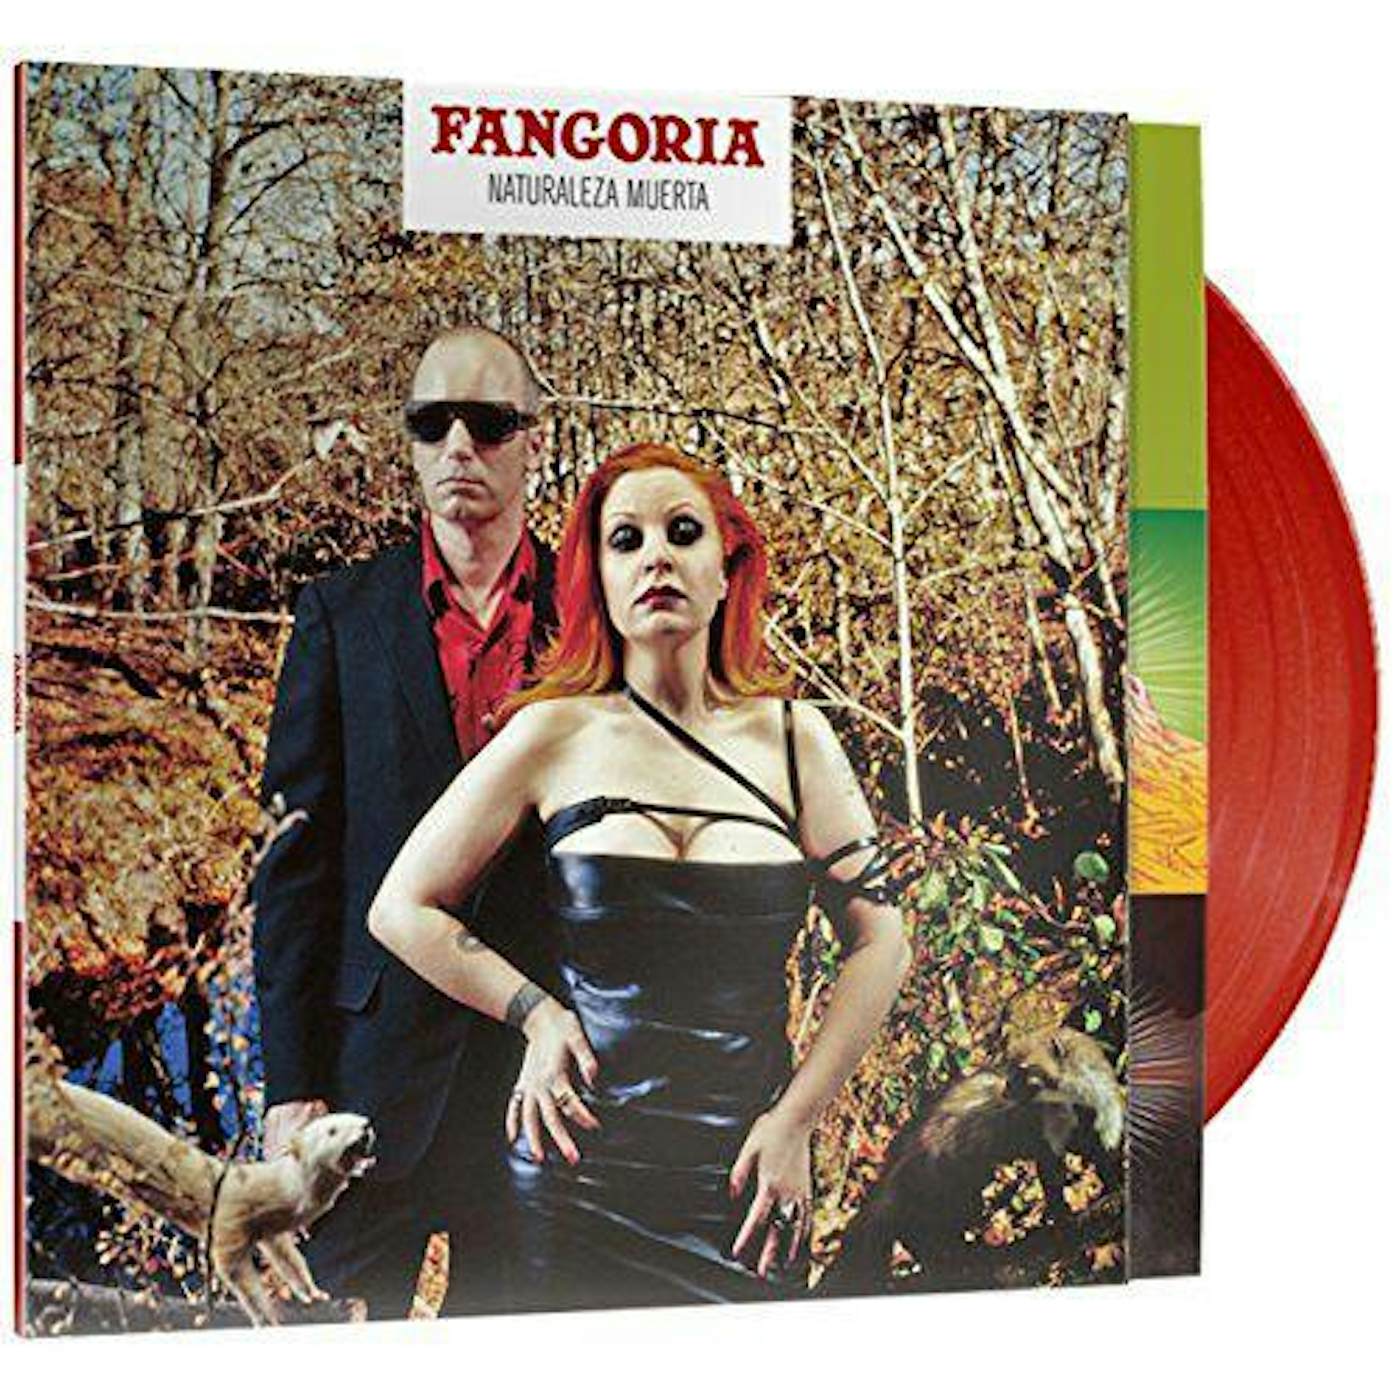 Fangoria: Sálvame - Vinil Maxi Single Color Violeta Nuevo